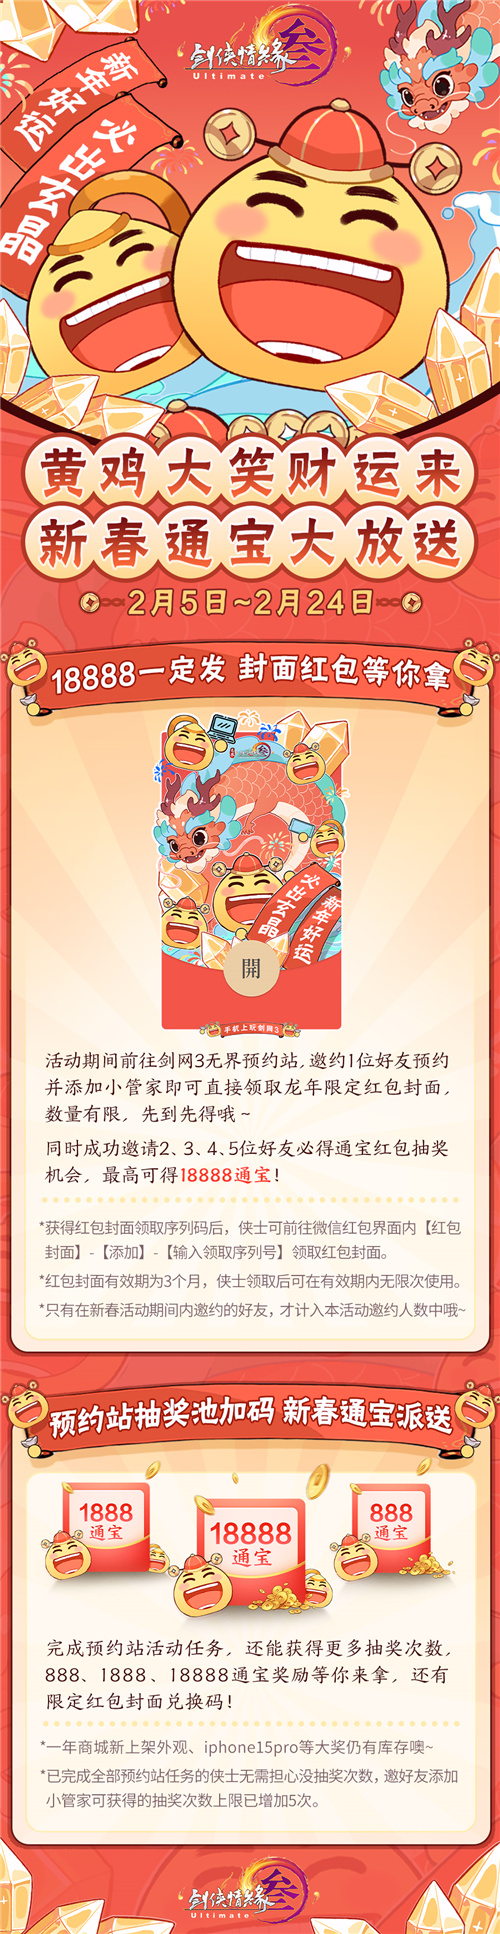 《剑网3无界》iOS预订开启 新春通宝利是大放送